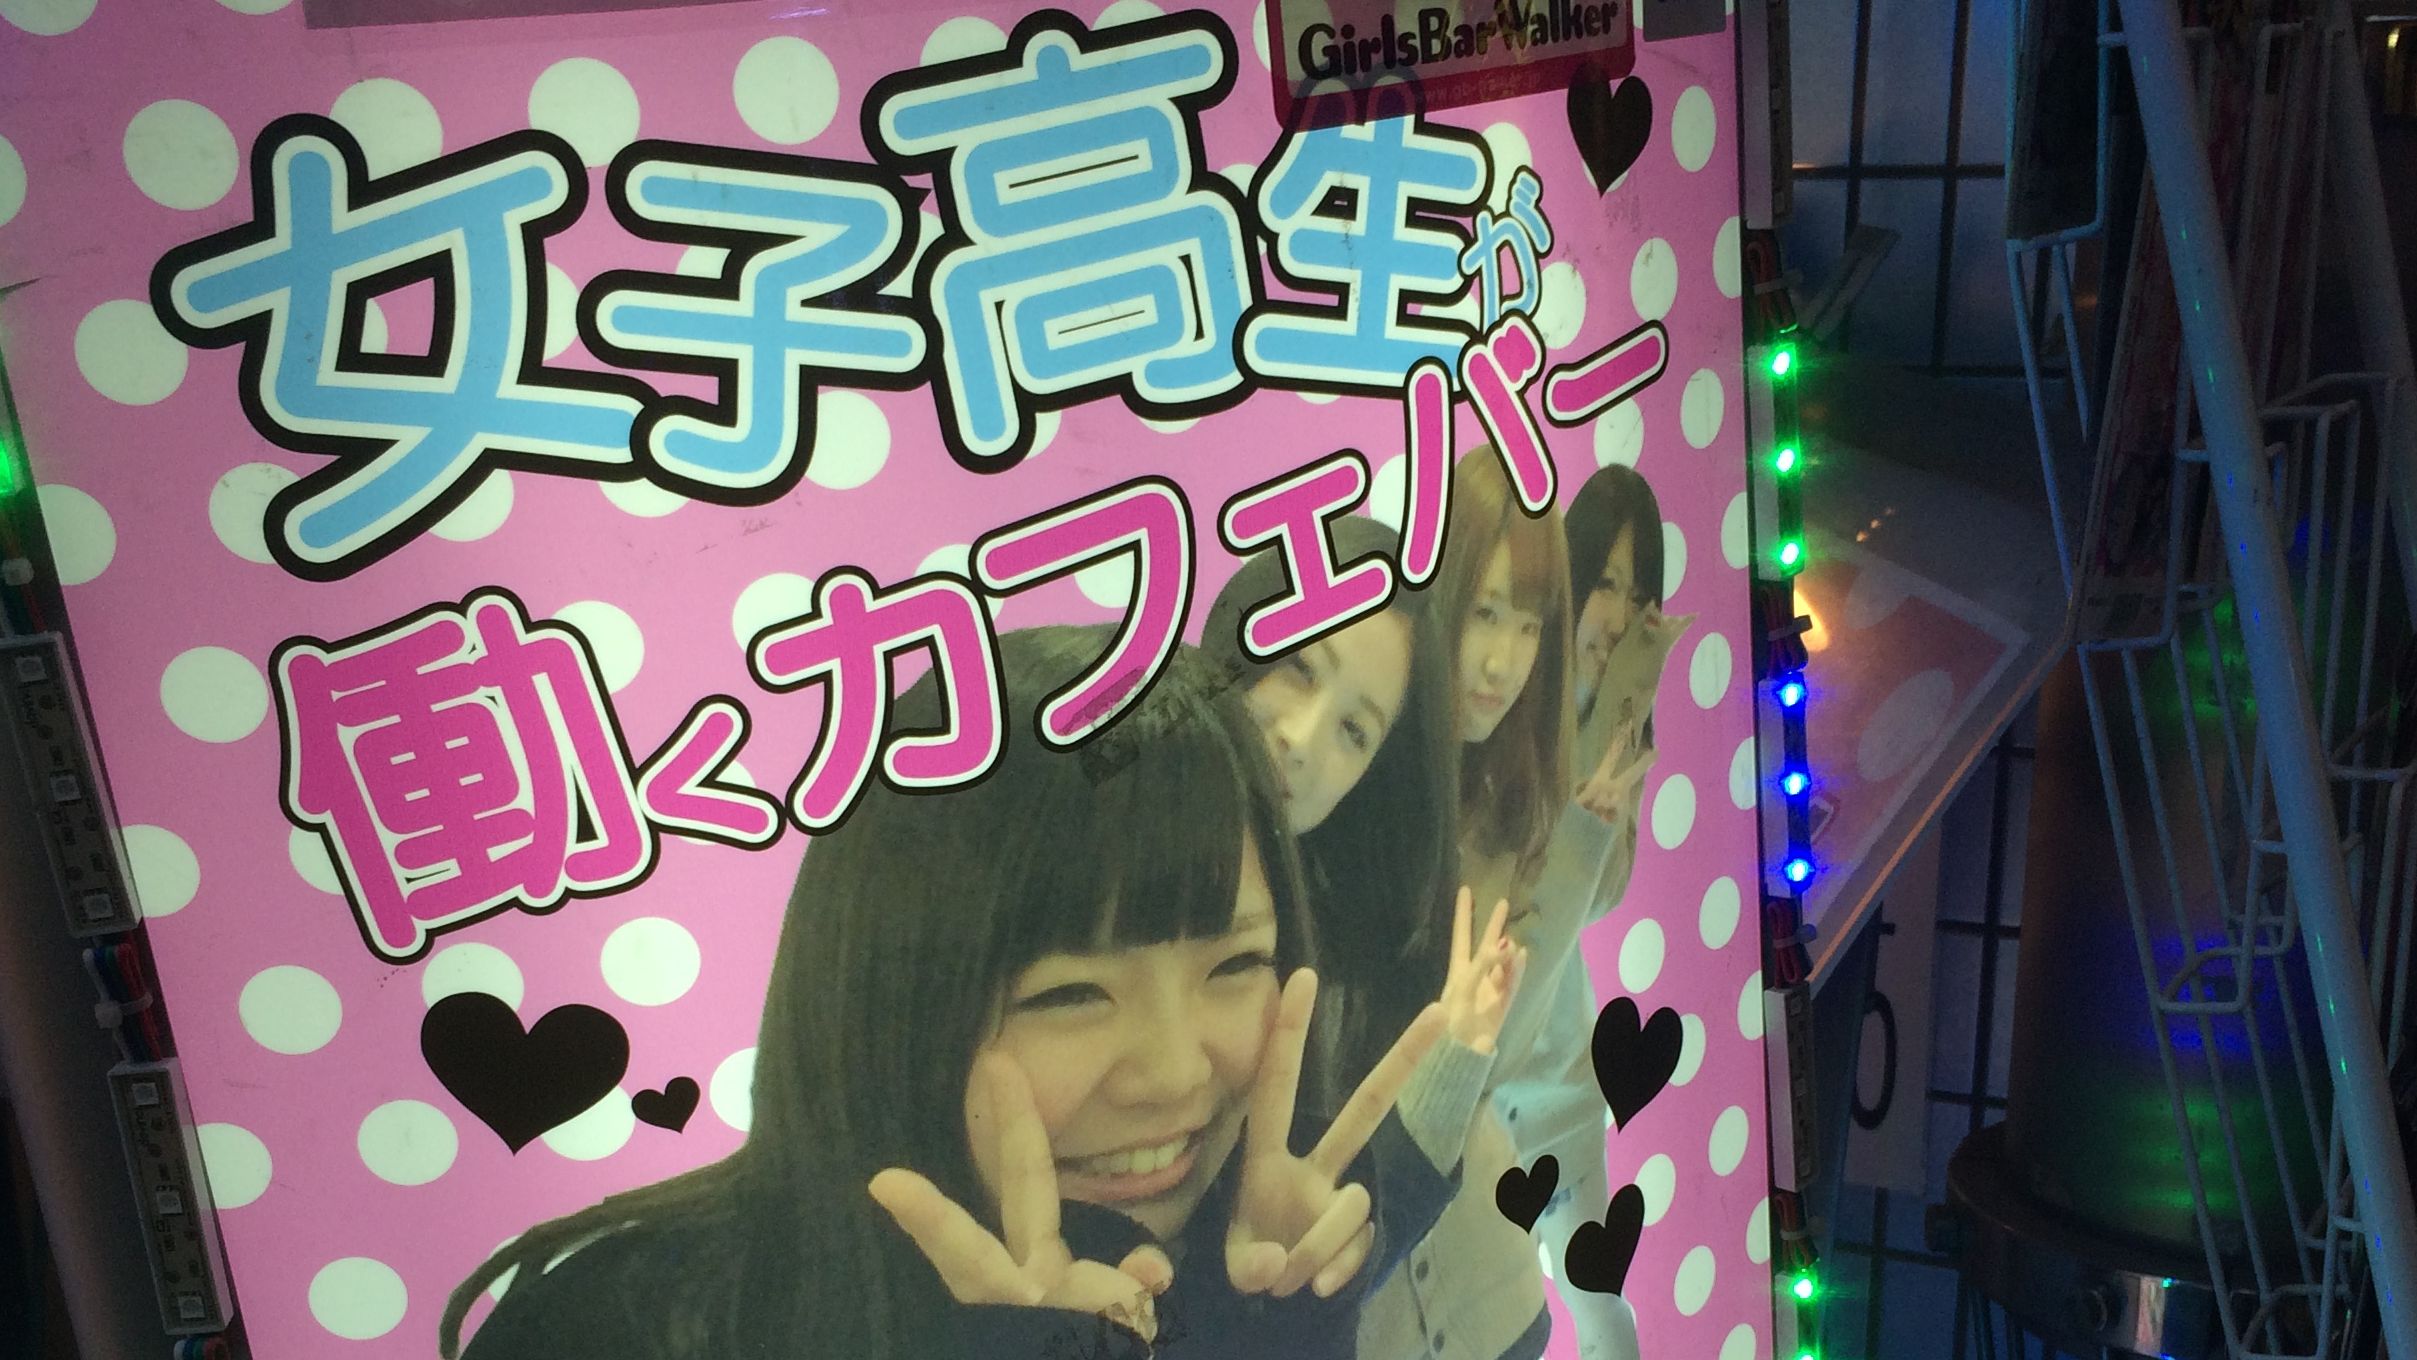 Japanese Sleeping Facial - Japan school girl culture: The dark truth | CNN